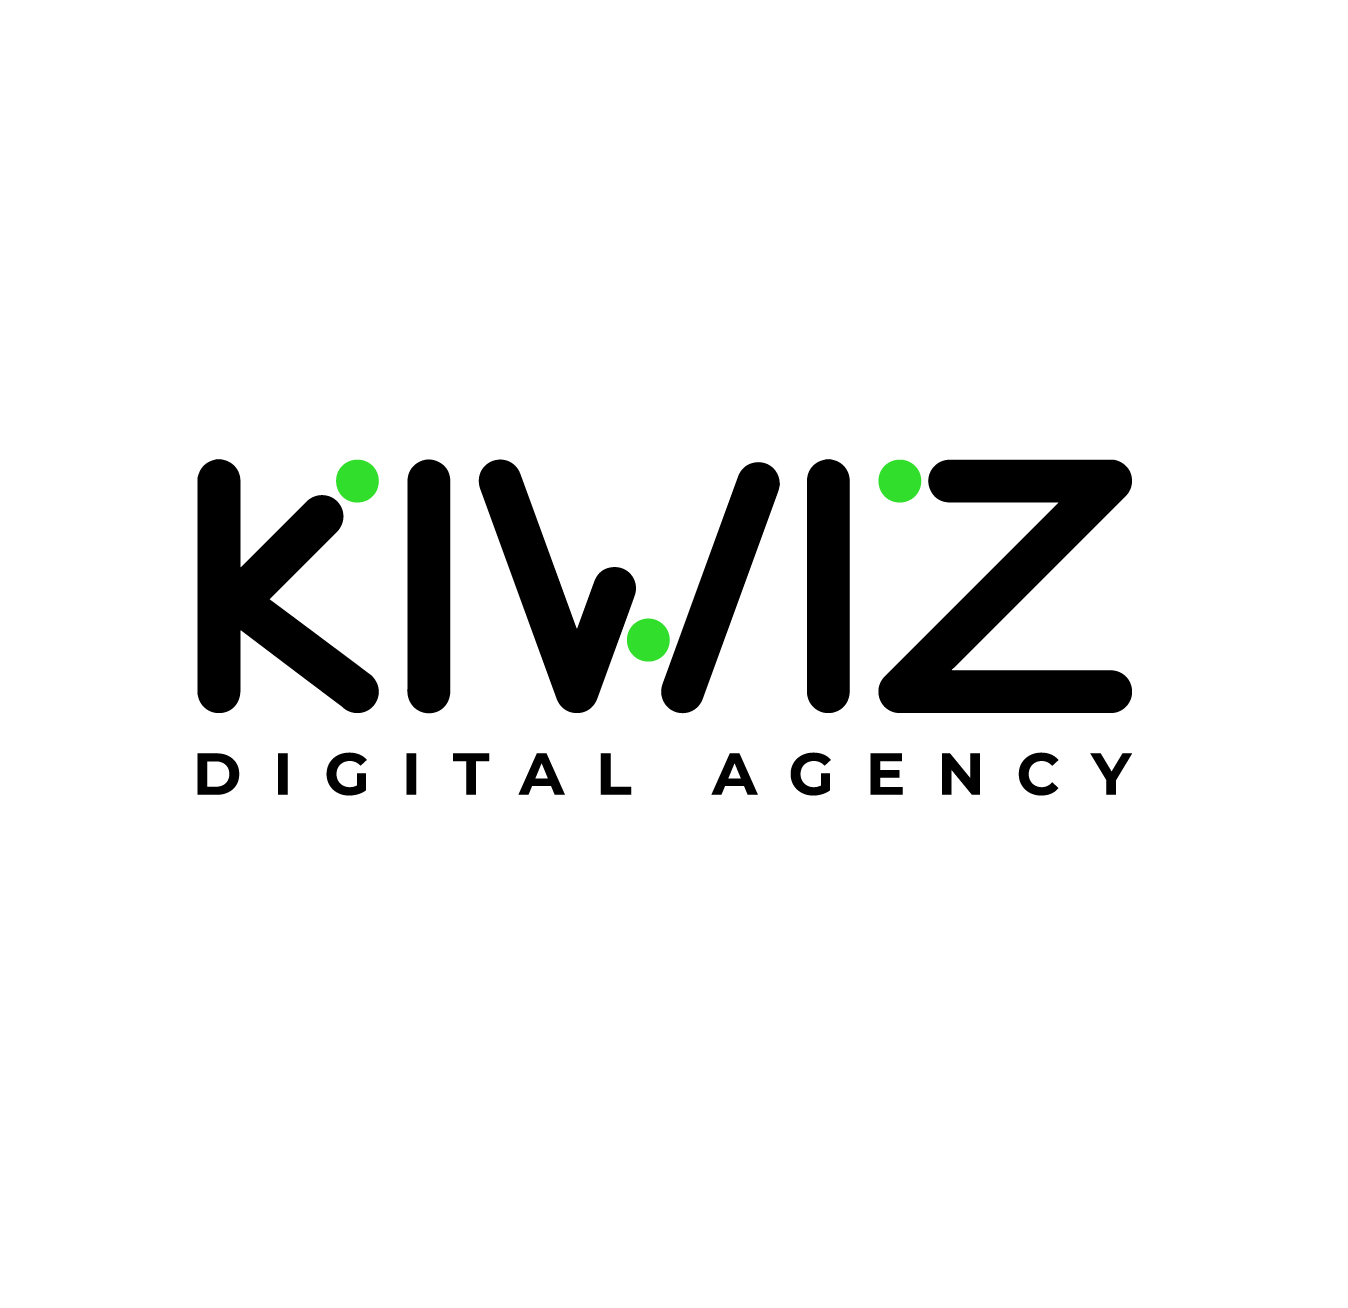 KIWIZ Digital Agency